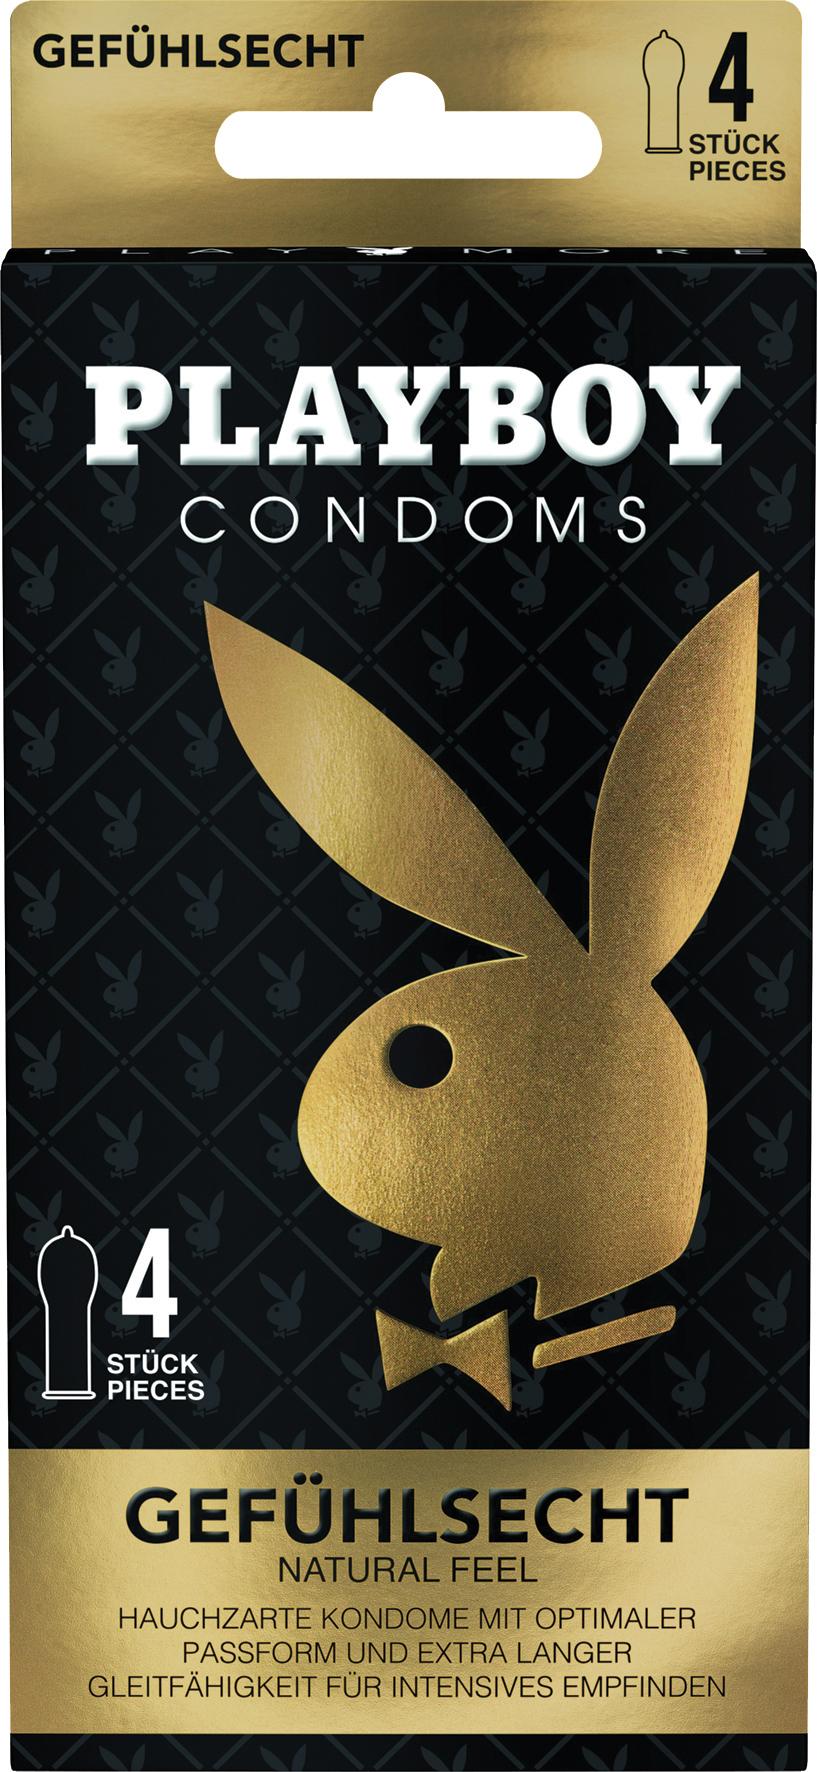 PLAYBOY Condoms Gefühlsecht, suured kondoomid, 4tk